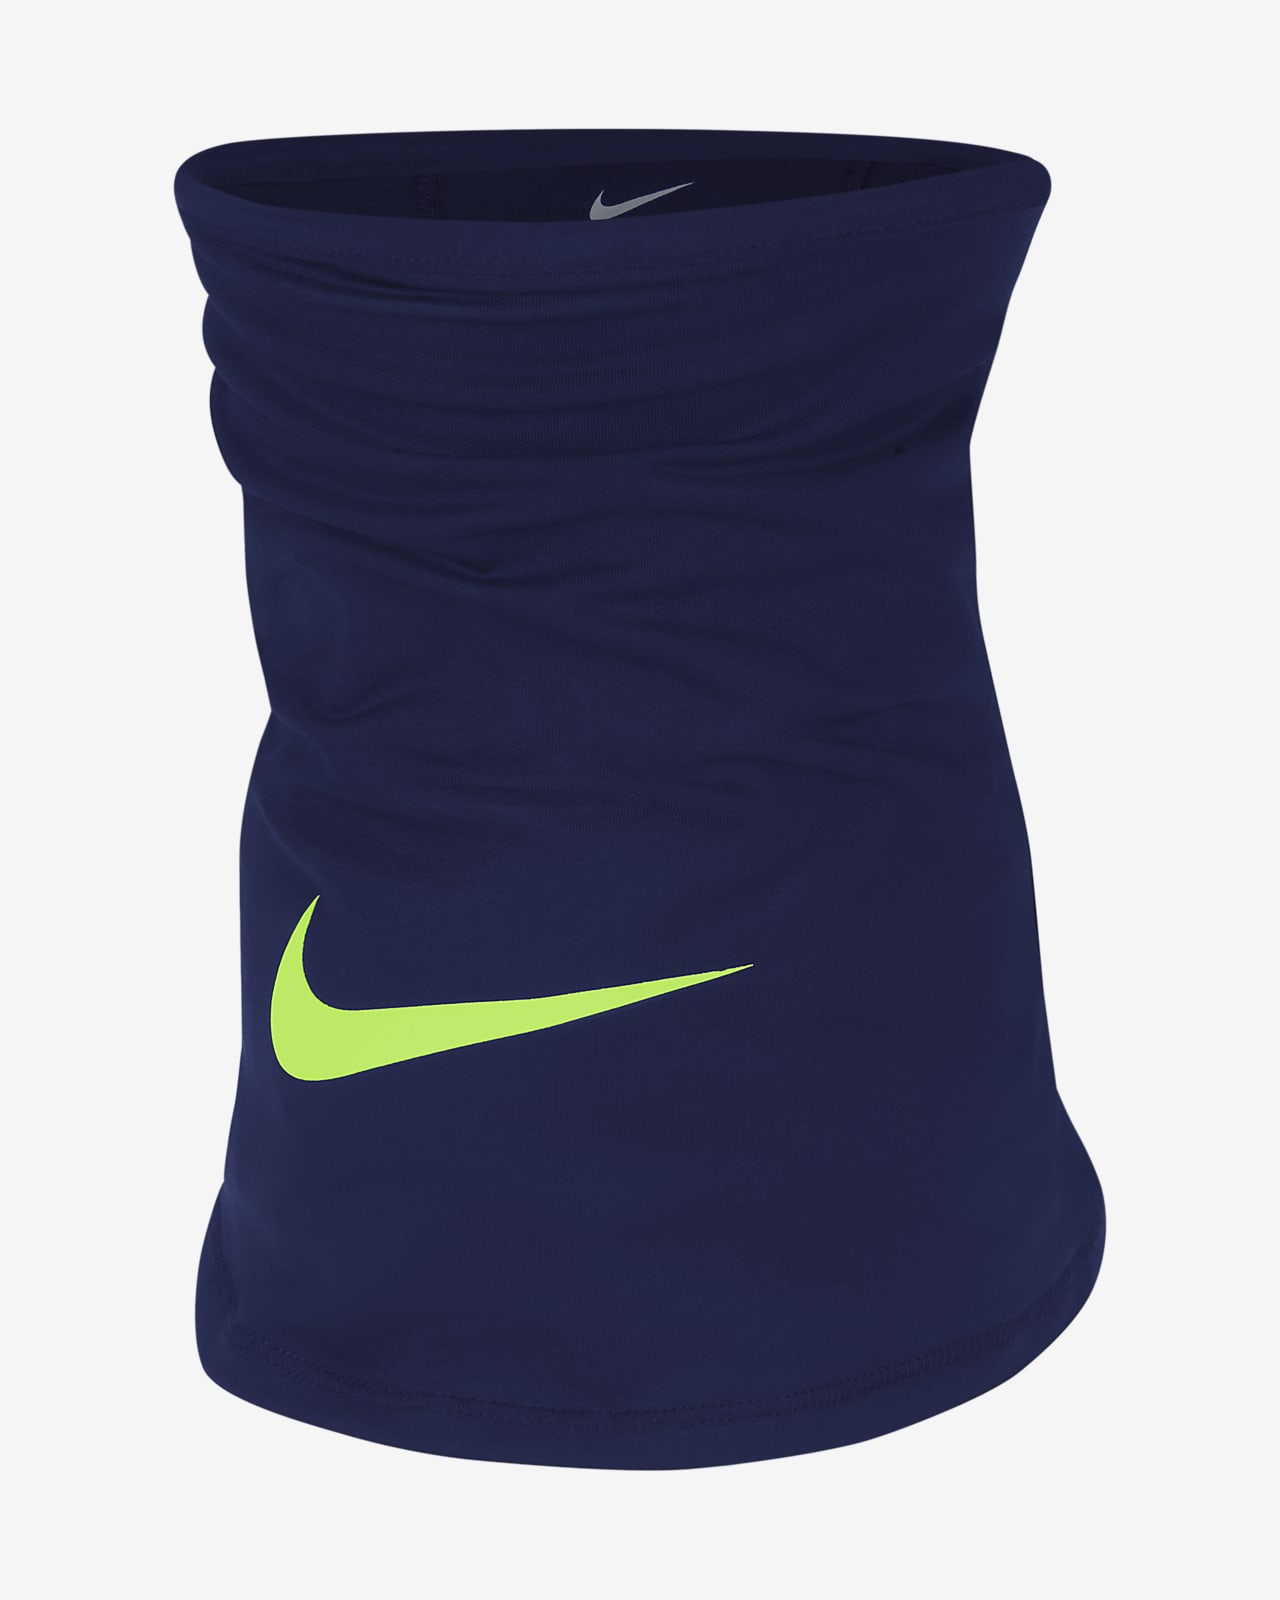 Nike公式 ナイキ Dri Fit ウィンター ウォリアー ネックウォーマー オンラインストア 通販サイト